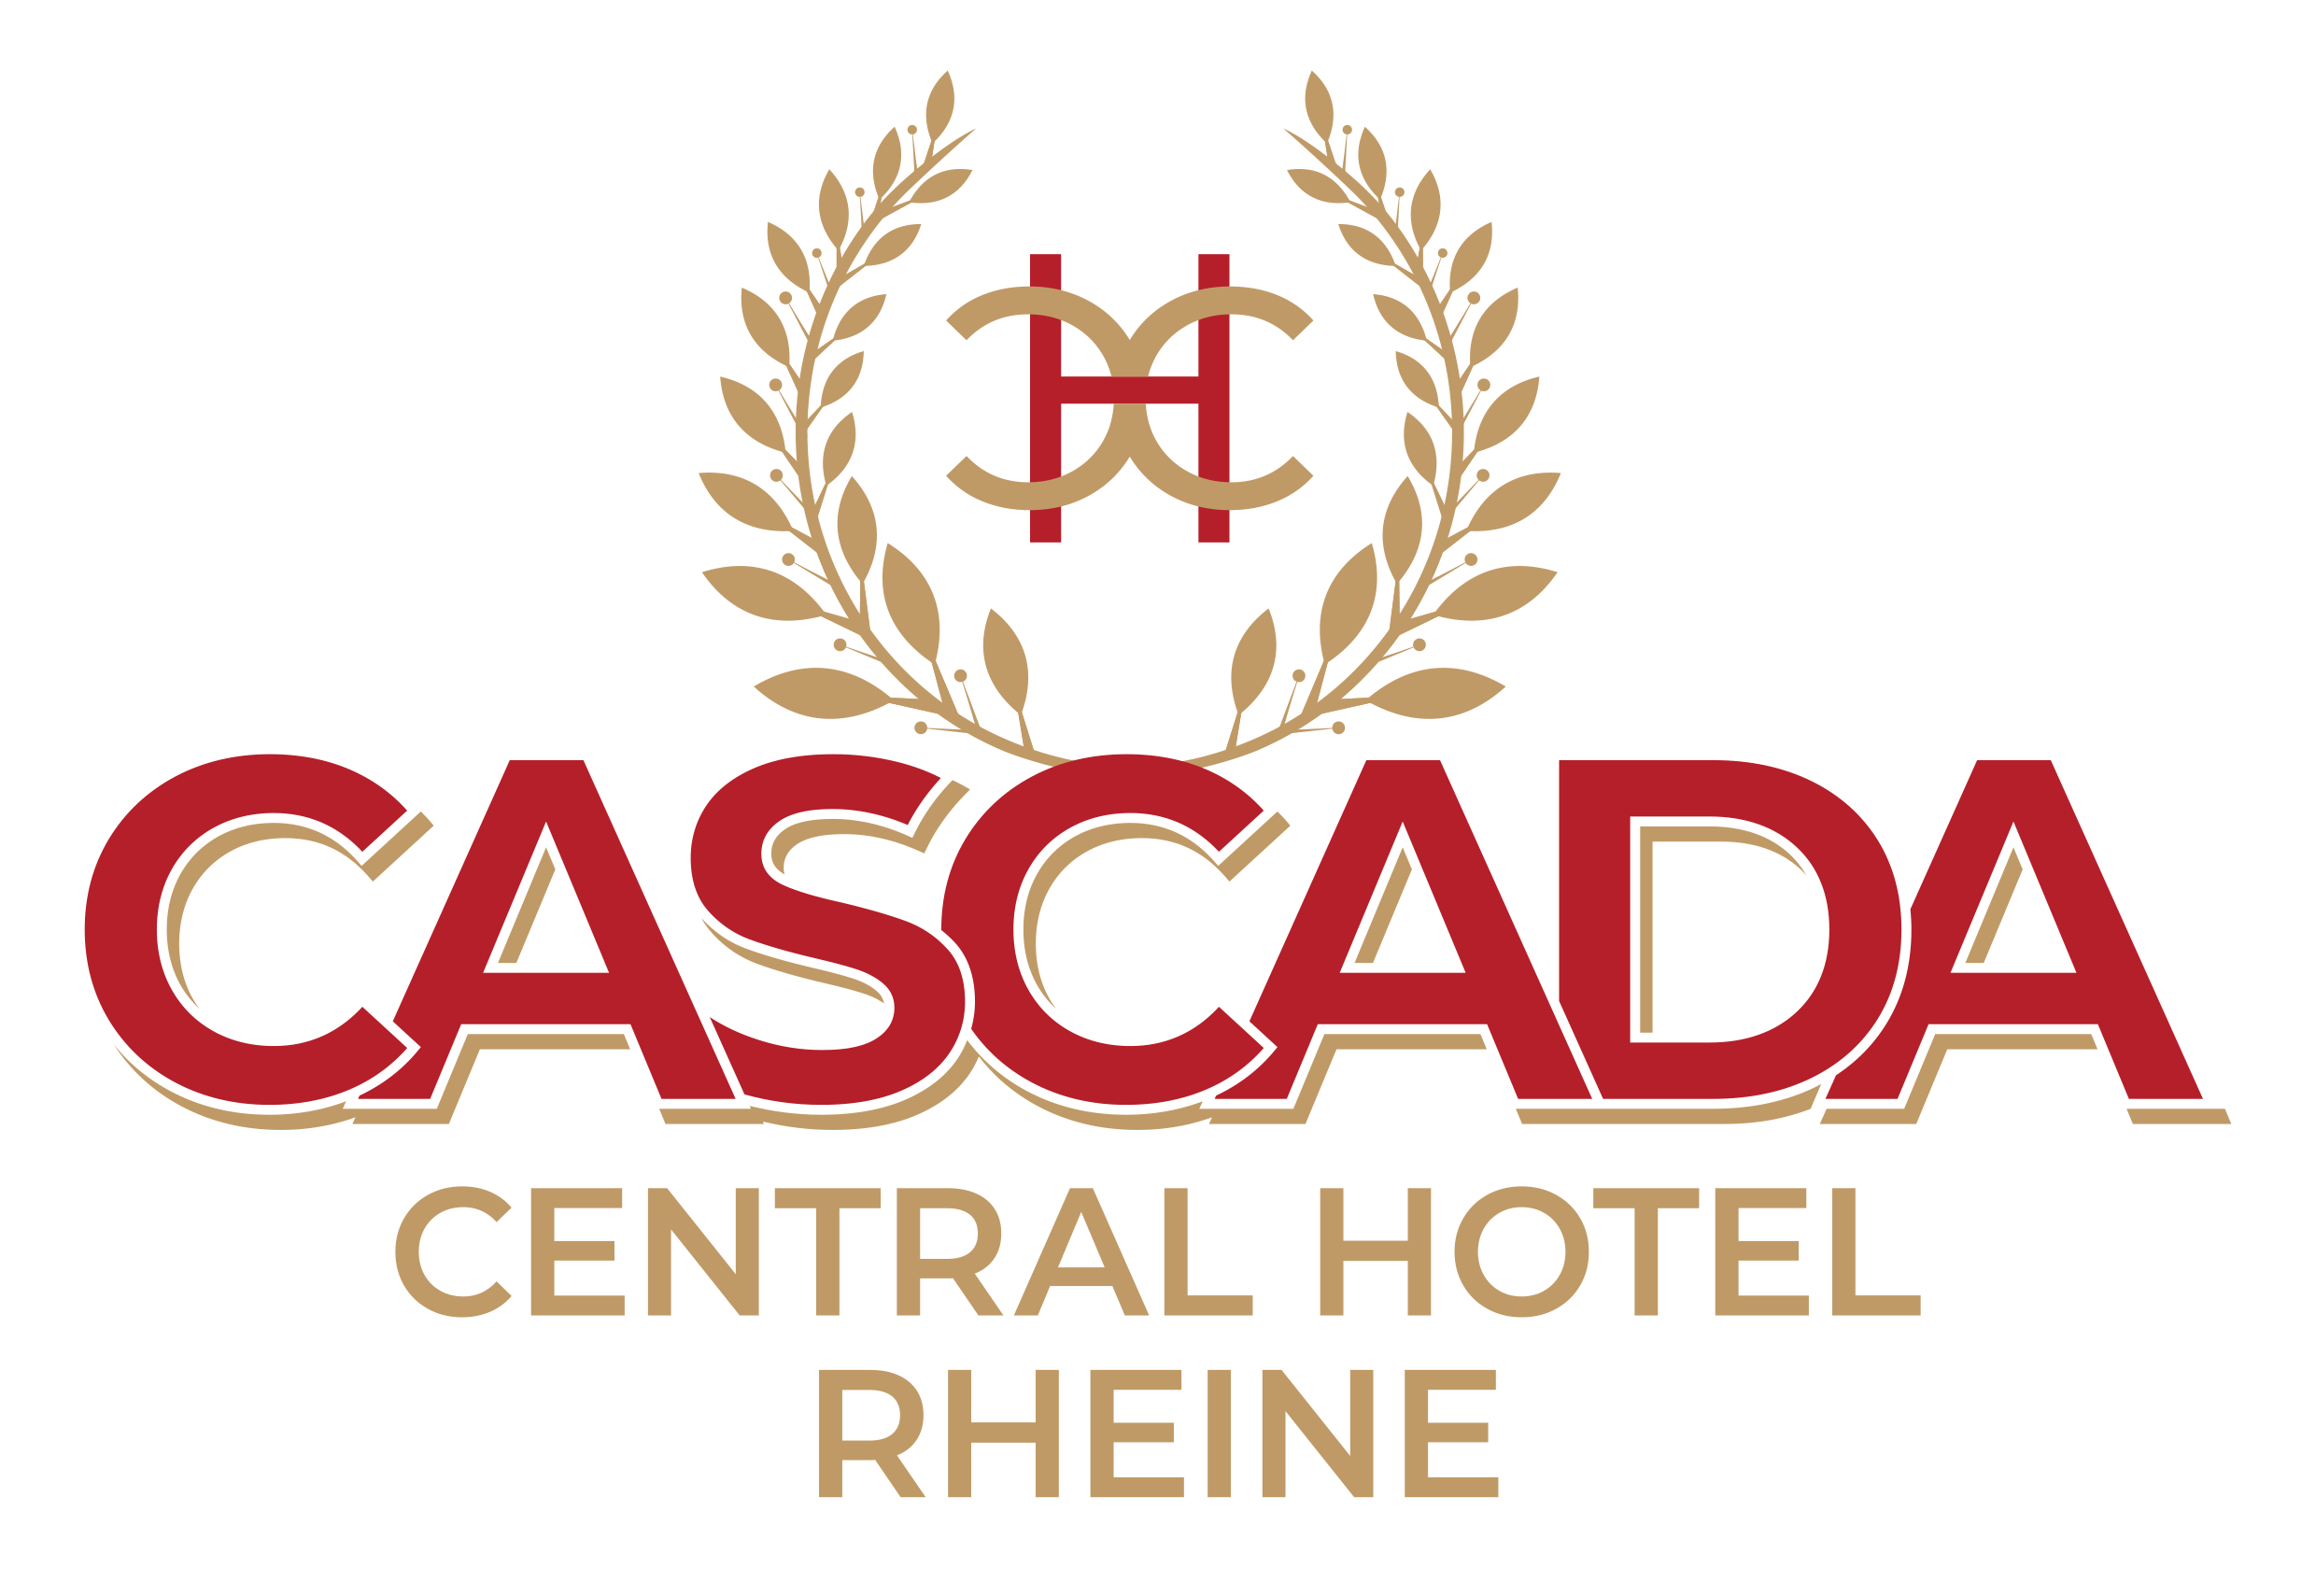 Cascada Central Hotel Rheine